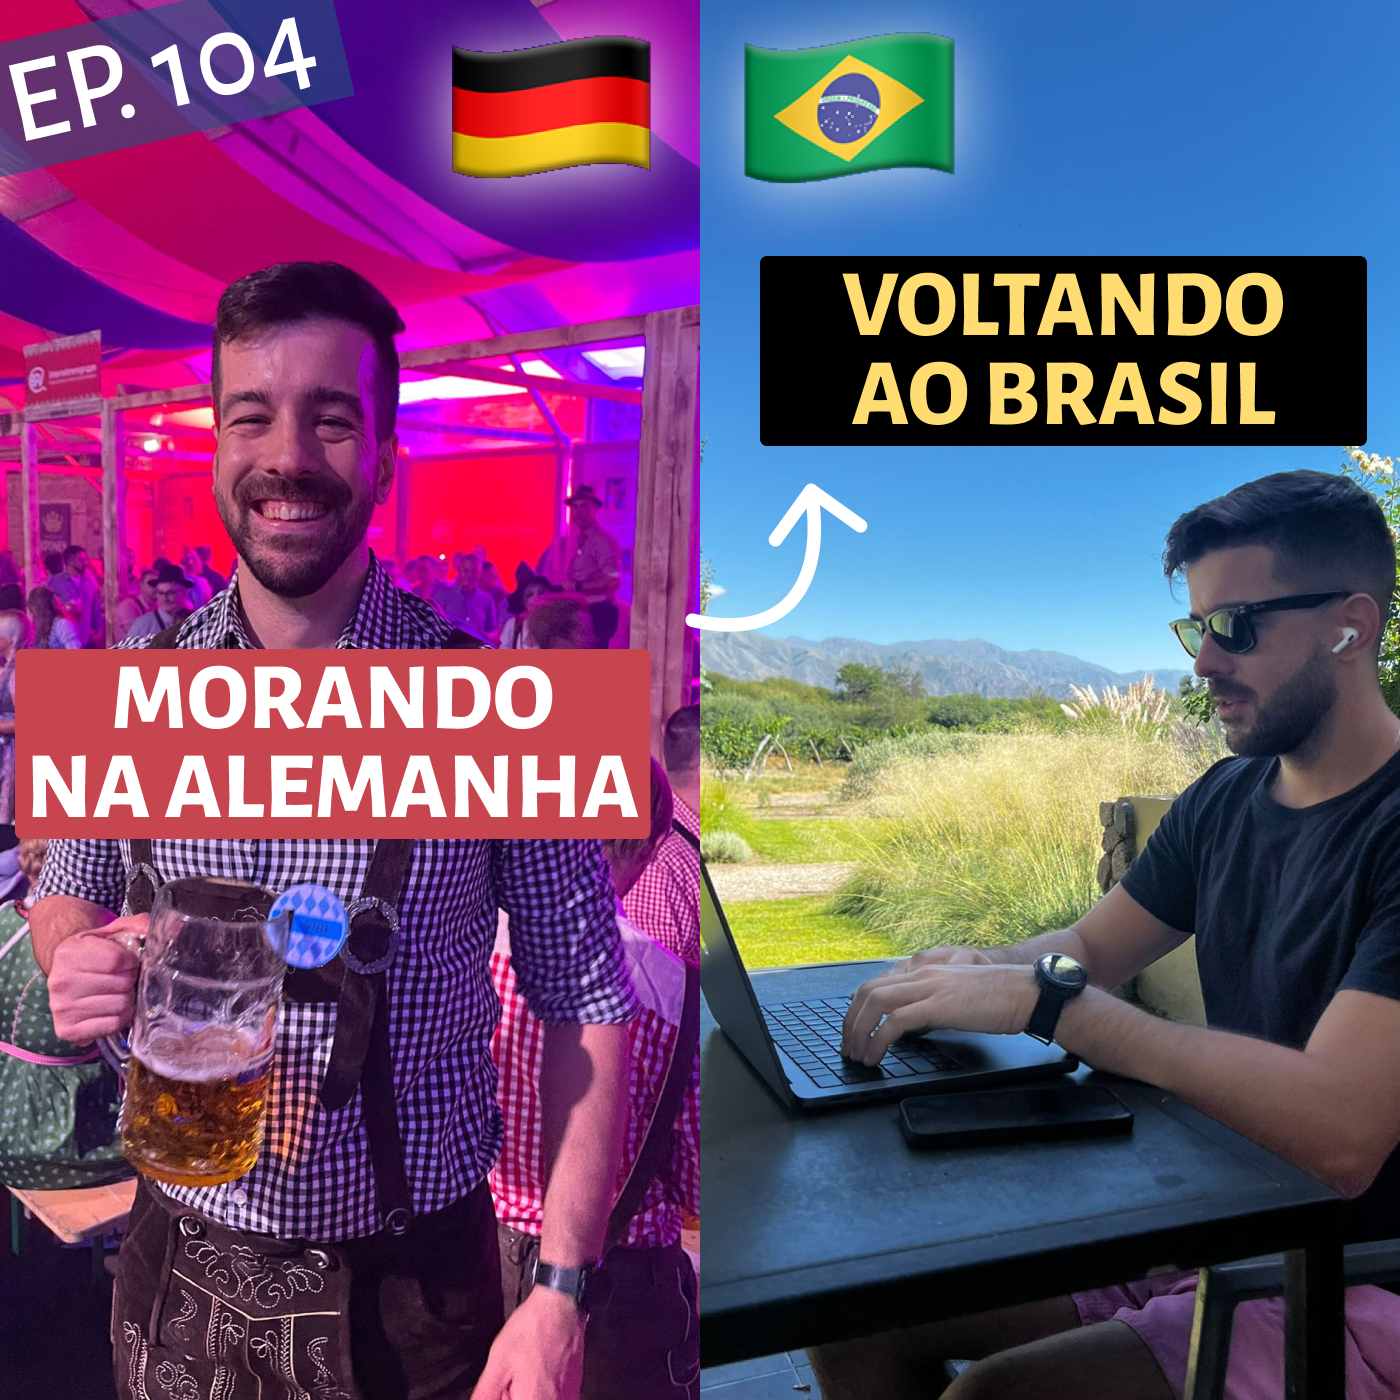 5 Anos Morando na Alemanha e Voltando ao Brasil, com  @pasquadev  (Vinicius Pasquantonio) #104